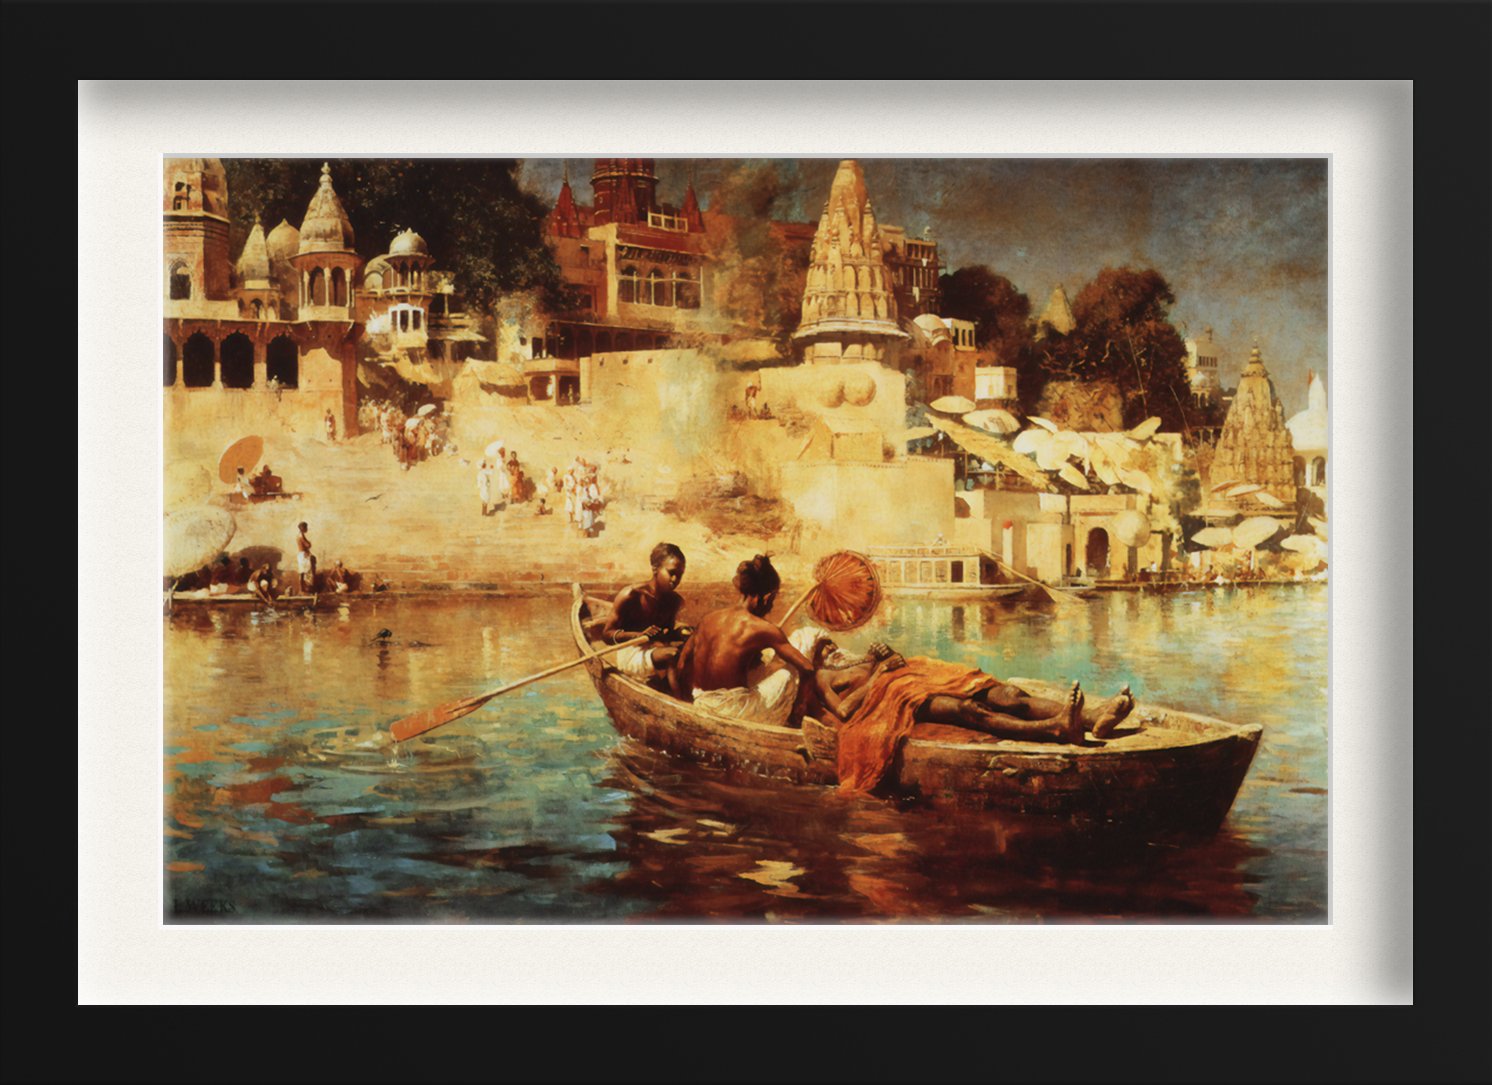 A Souvenir of the Ganges Painting - Meri Deewar - MeriDeewar